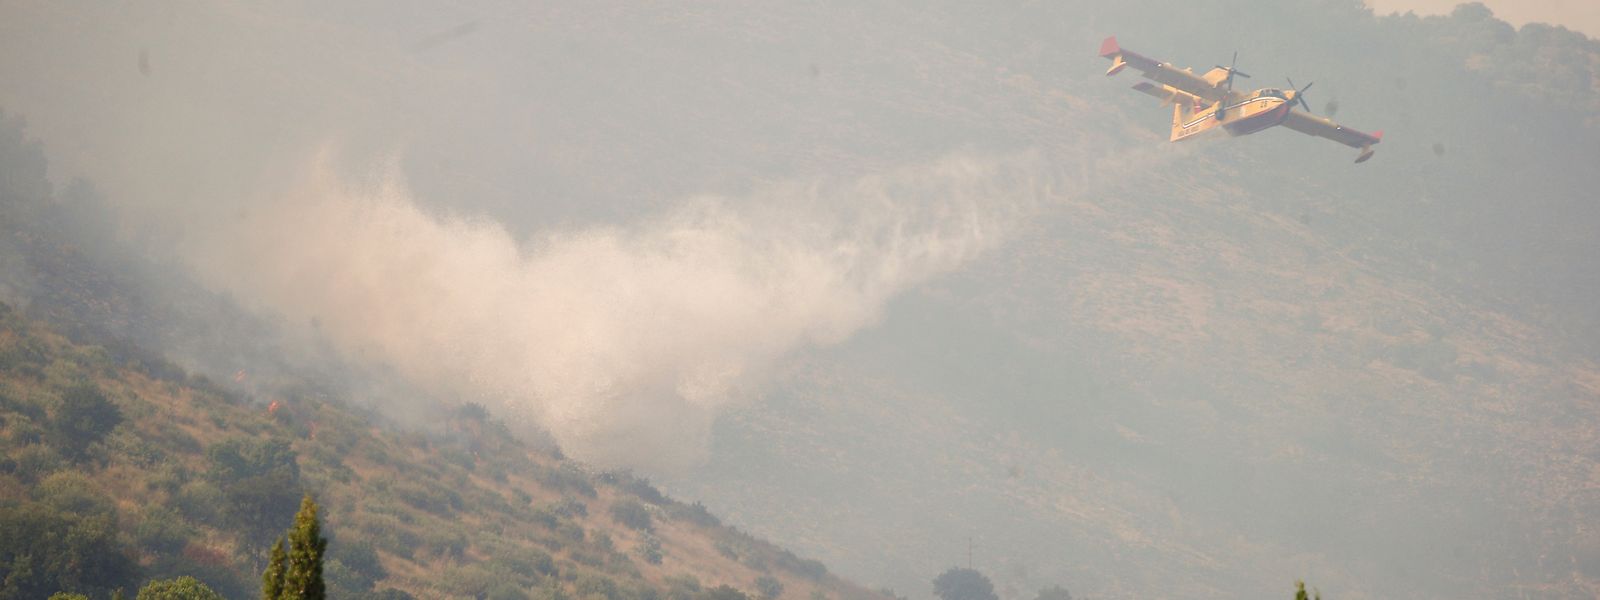 Rauch steigt von einem Feuer im Bergpark Catillo in der Nähe von Tivoli auf, während ein Löschflugzeug darüber Wasser abwirft.